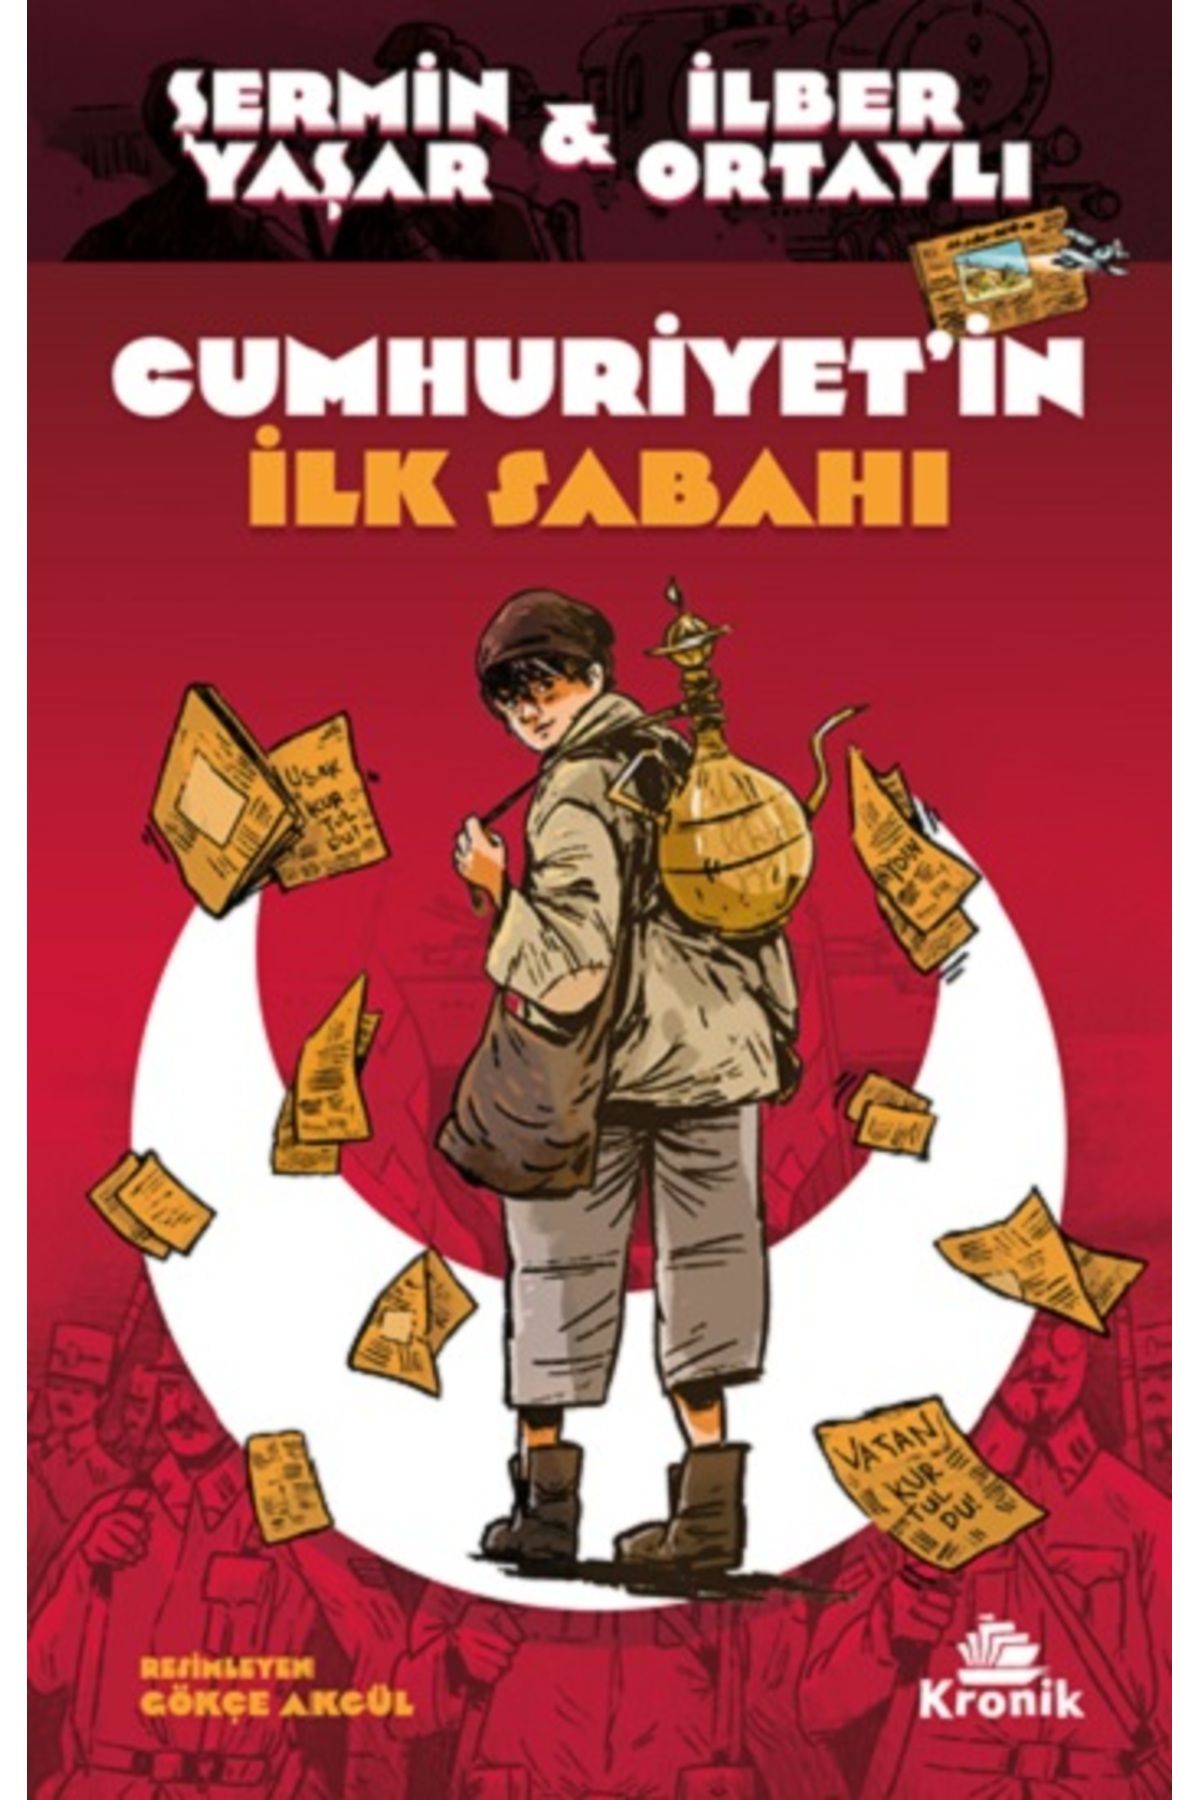 Kronik Kitap Cumhuriyet’in İlk Sabahı kitabı - Şermin Yaşar & İlber Ortaylı - Kronik Kitap